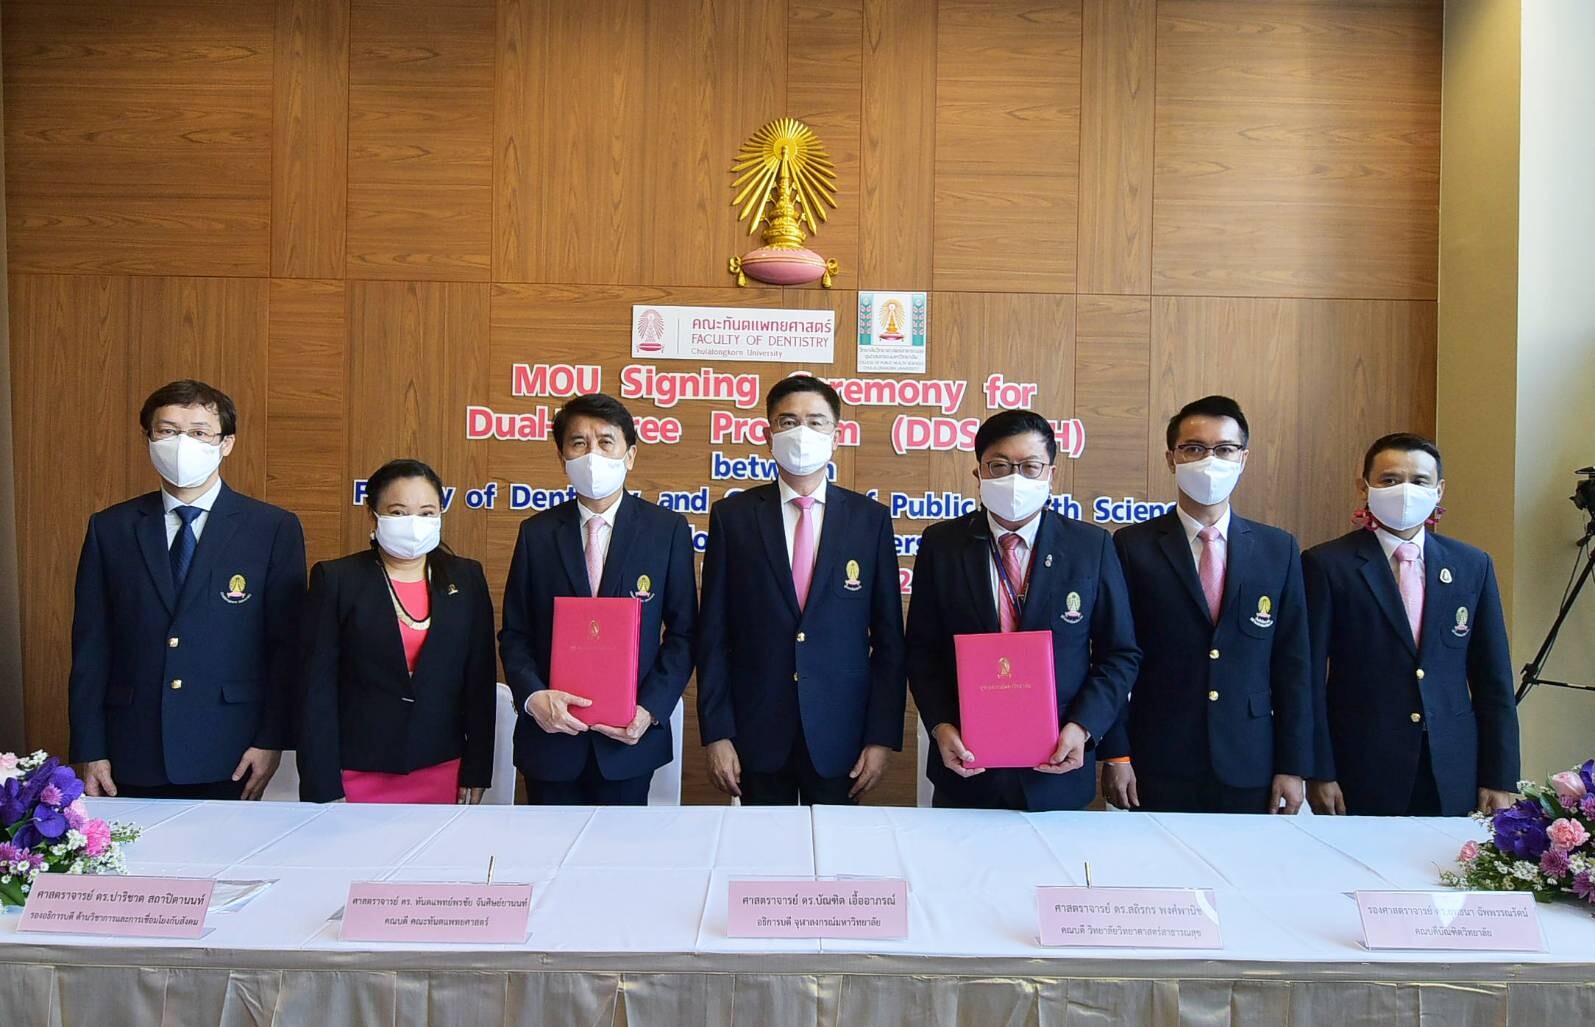 จุฬาฯ เปิดหลักสูตรควบข้ามระดับ ทันตแพทยศาสตรบัณฑิตและสาธารณสุขศาสตรมหาบัณฑิต หลักสูตรแรกในไทย